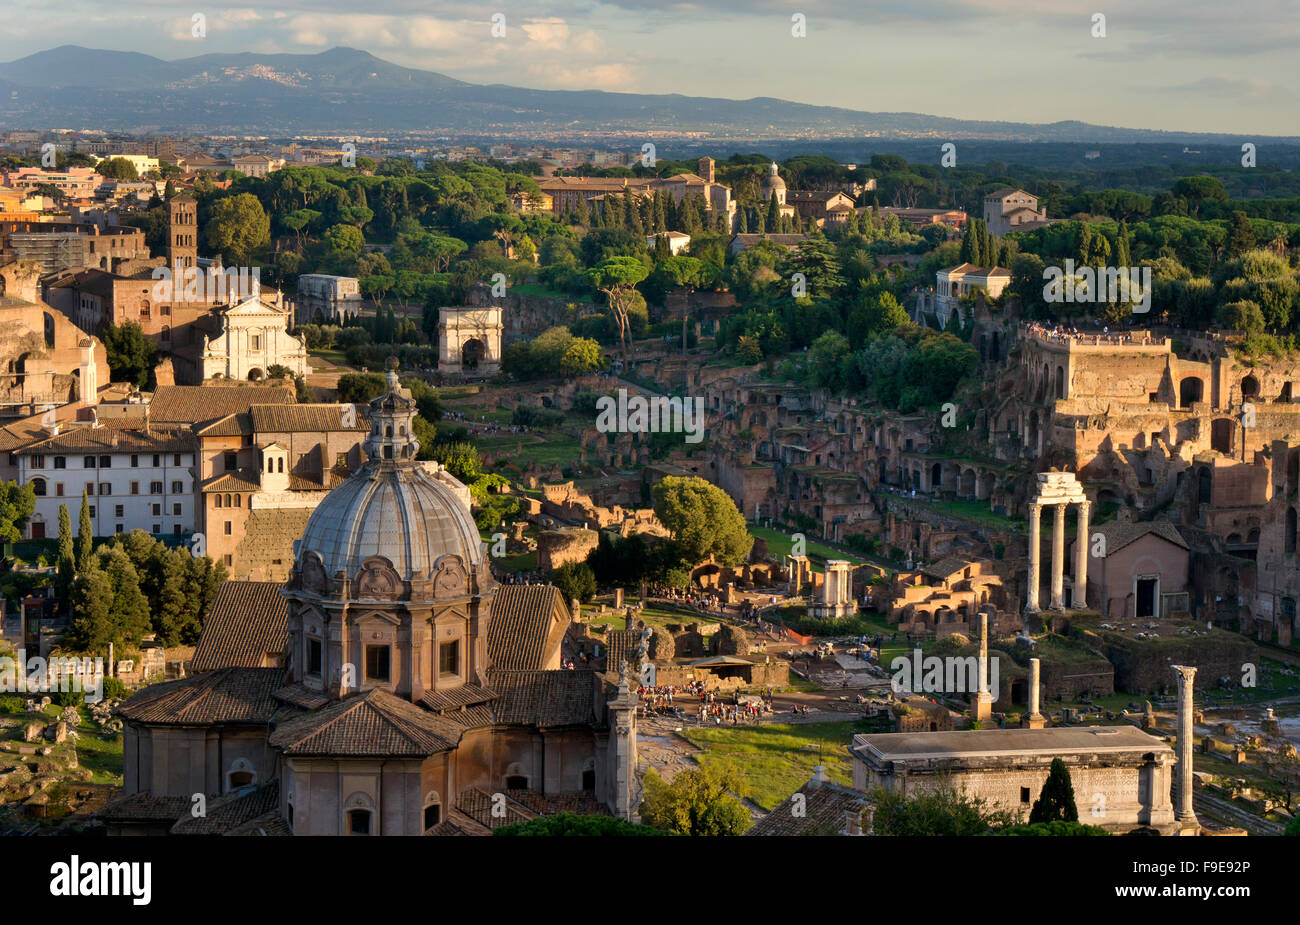 Le Forum romain avec la basilique au premier plan et les montagnes en arrière-plan,Rome,Italie Banque D'Images